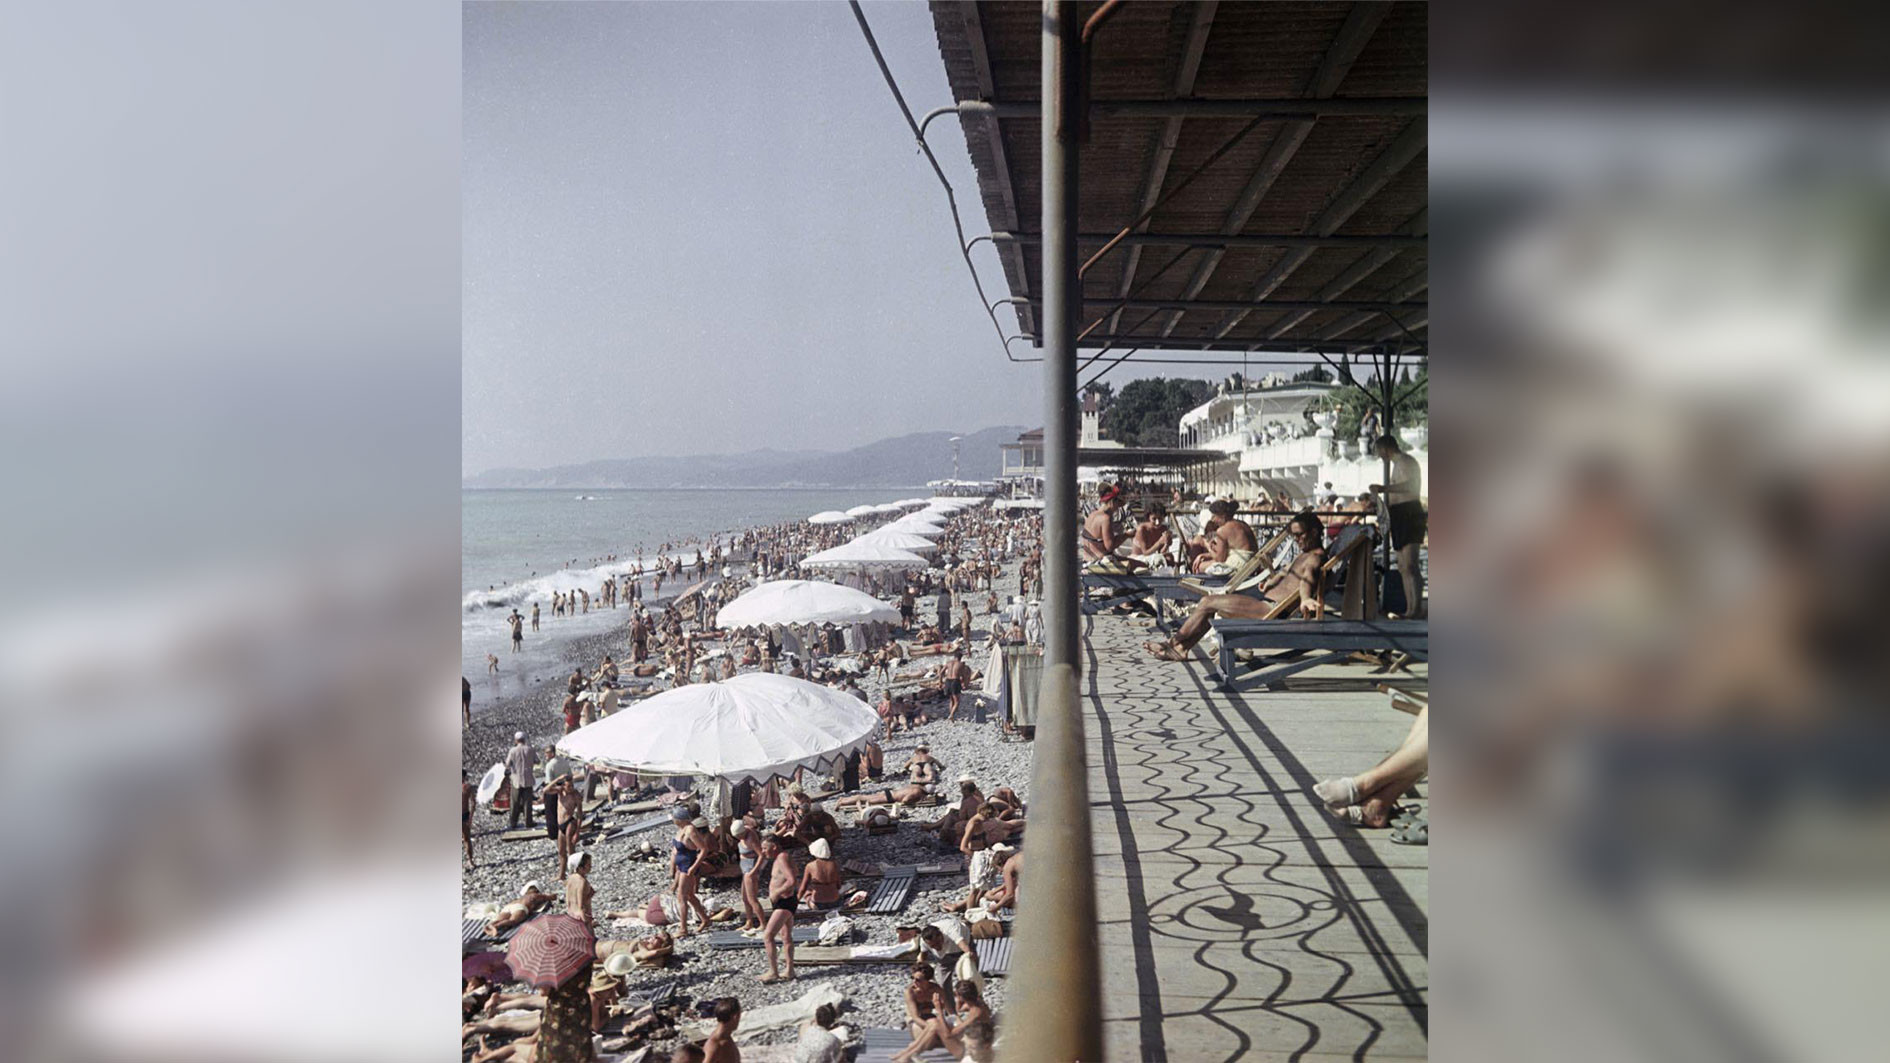 Пляж санатория "Лазурный Берег" в Сочи. Год 1960. Фото: © РИА Новости/Н. Максимов